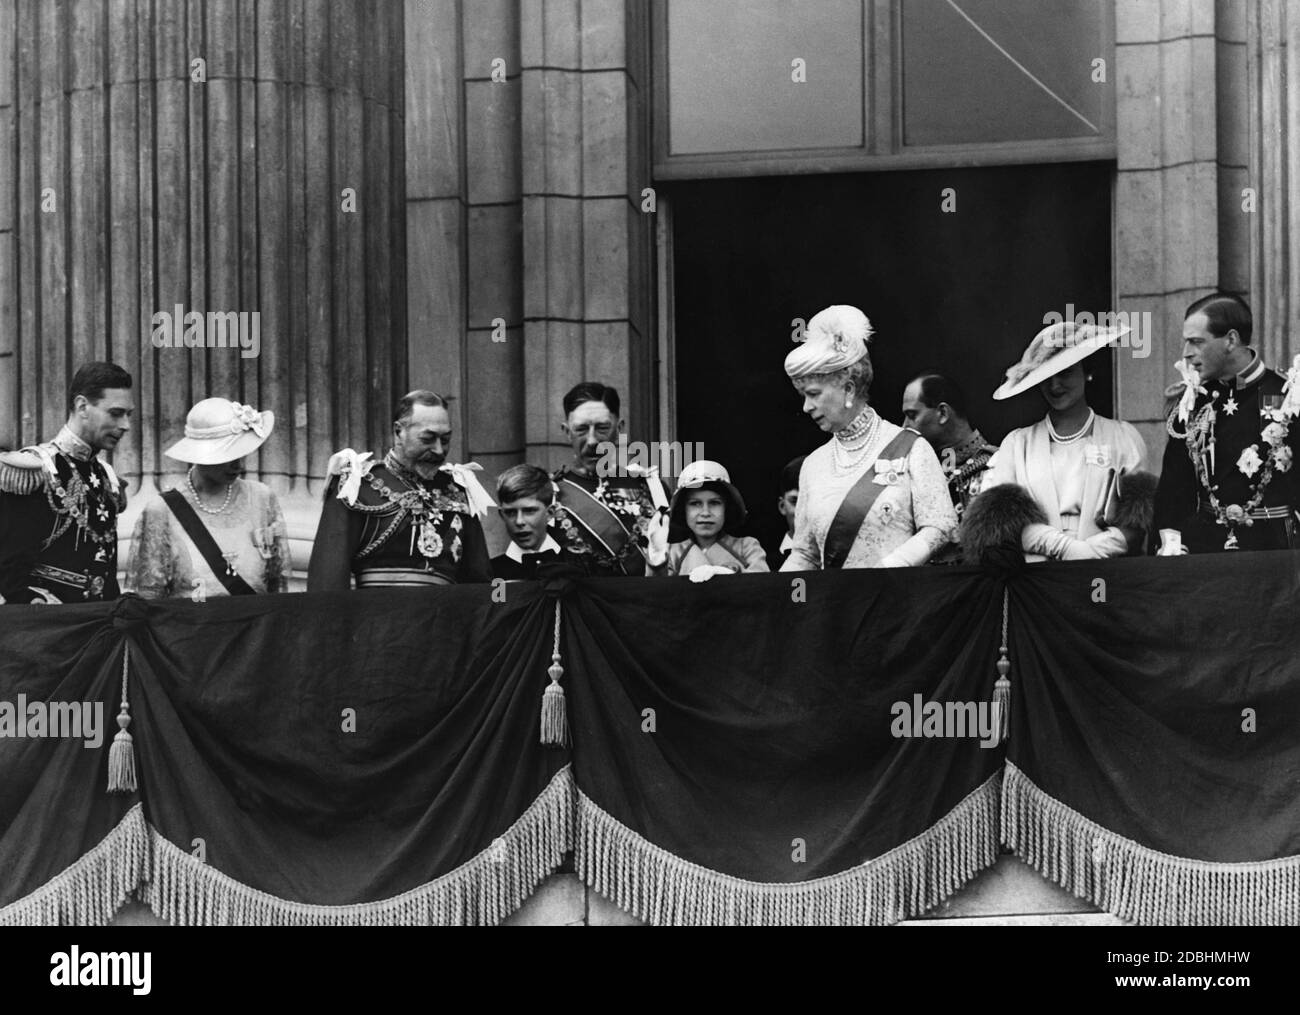 De gauche à droite : duc de York, princesse royale Mary, roi George V, Gerald Lascelles, princesse Elizabeth, reine mère Mary et port de plaisance de la Duchesse avec le duc George Edward de Kent sur le balcon de Buckingham Palace. Photo non datée, c. 1935. Banque D'Images